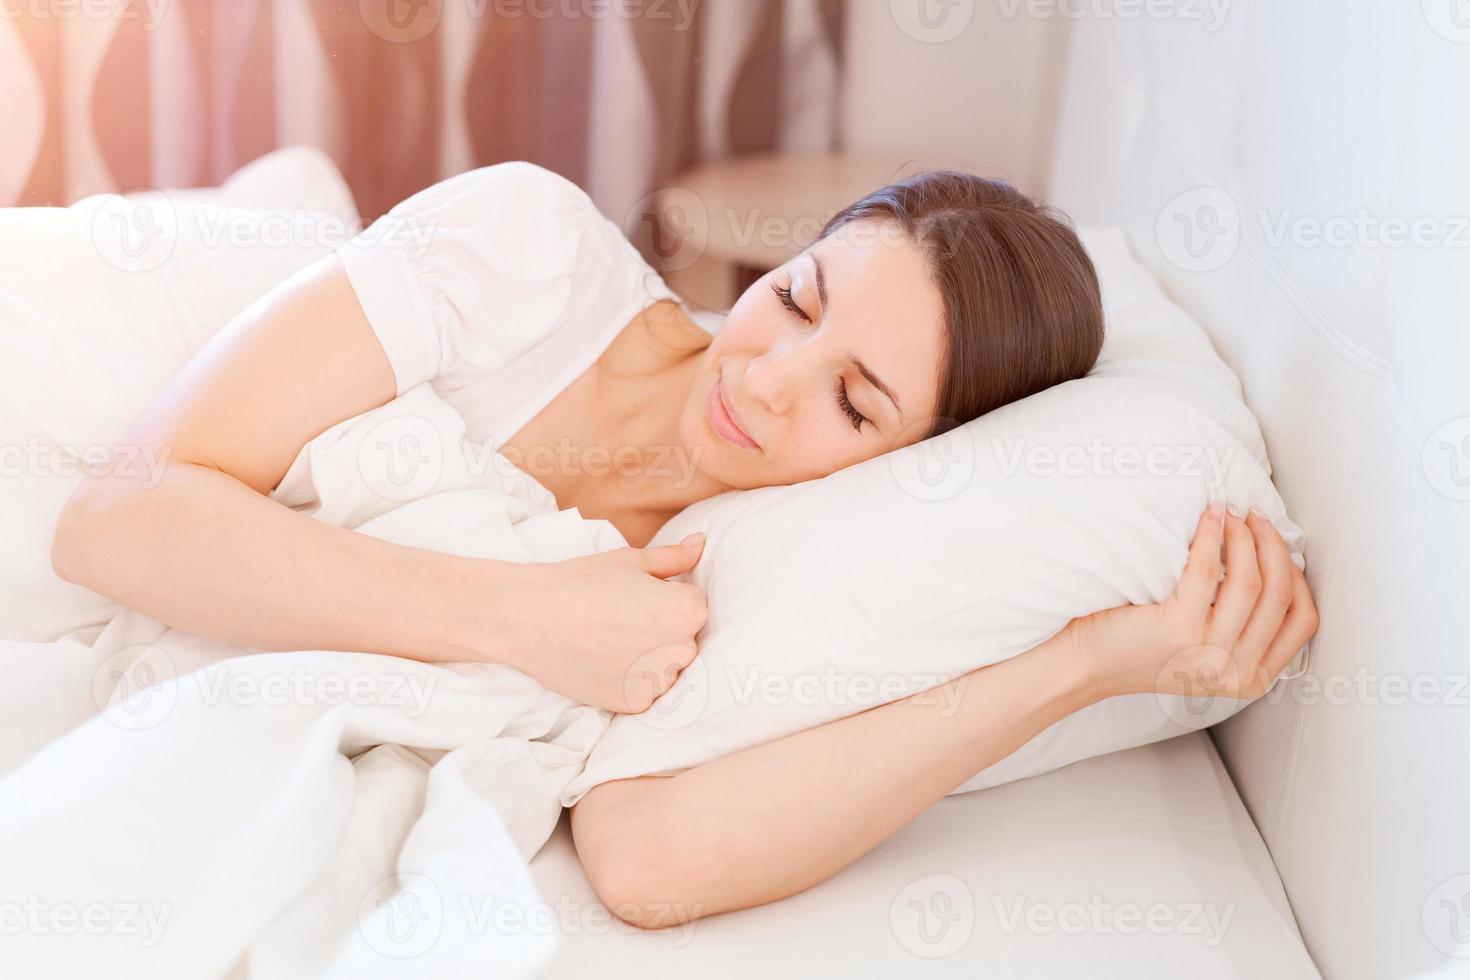 lugn lugna kvinna sovande i bekväm säng liggande på mjuk kudde ortopedisk foto